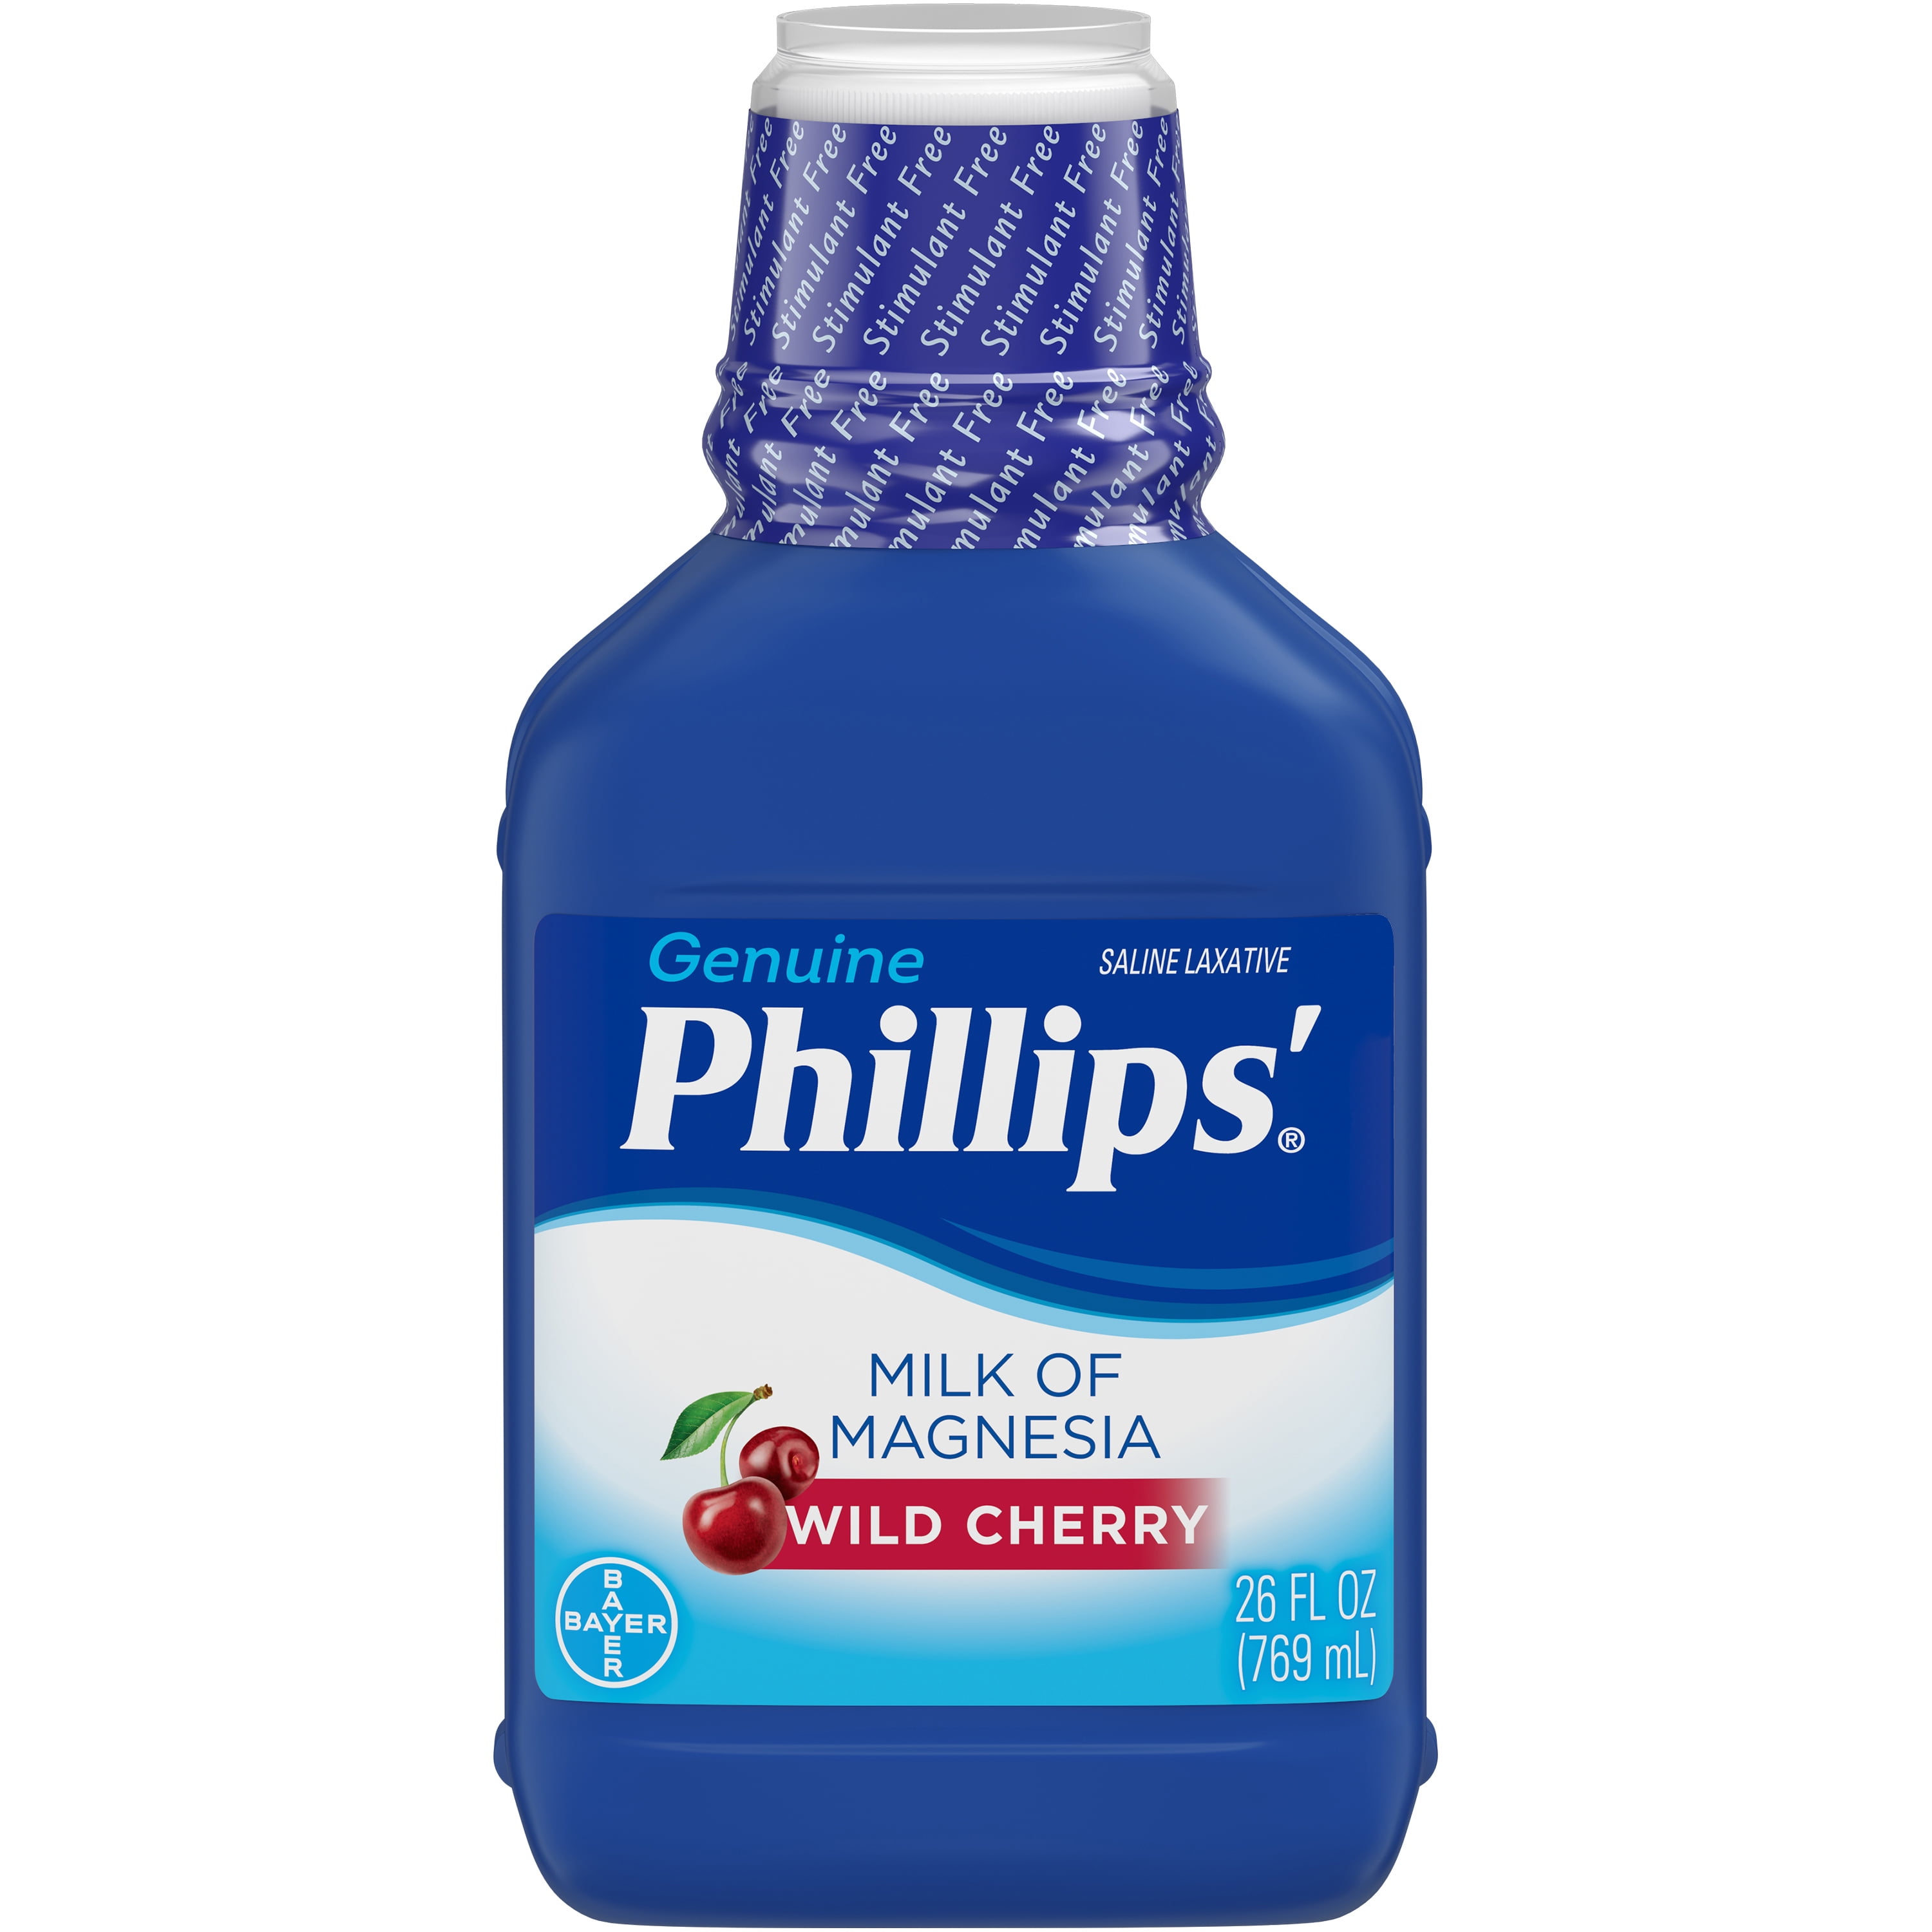 Phillips Milk Of Magnesia Liquid Magnesium Laxative, Wild Cherry, 26 oz